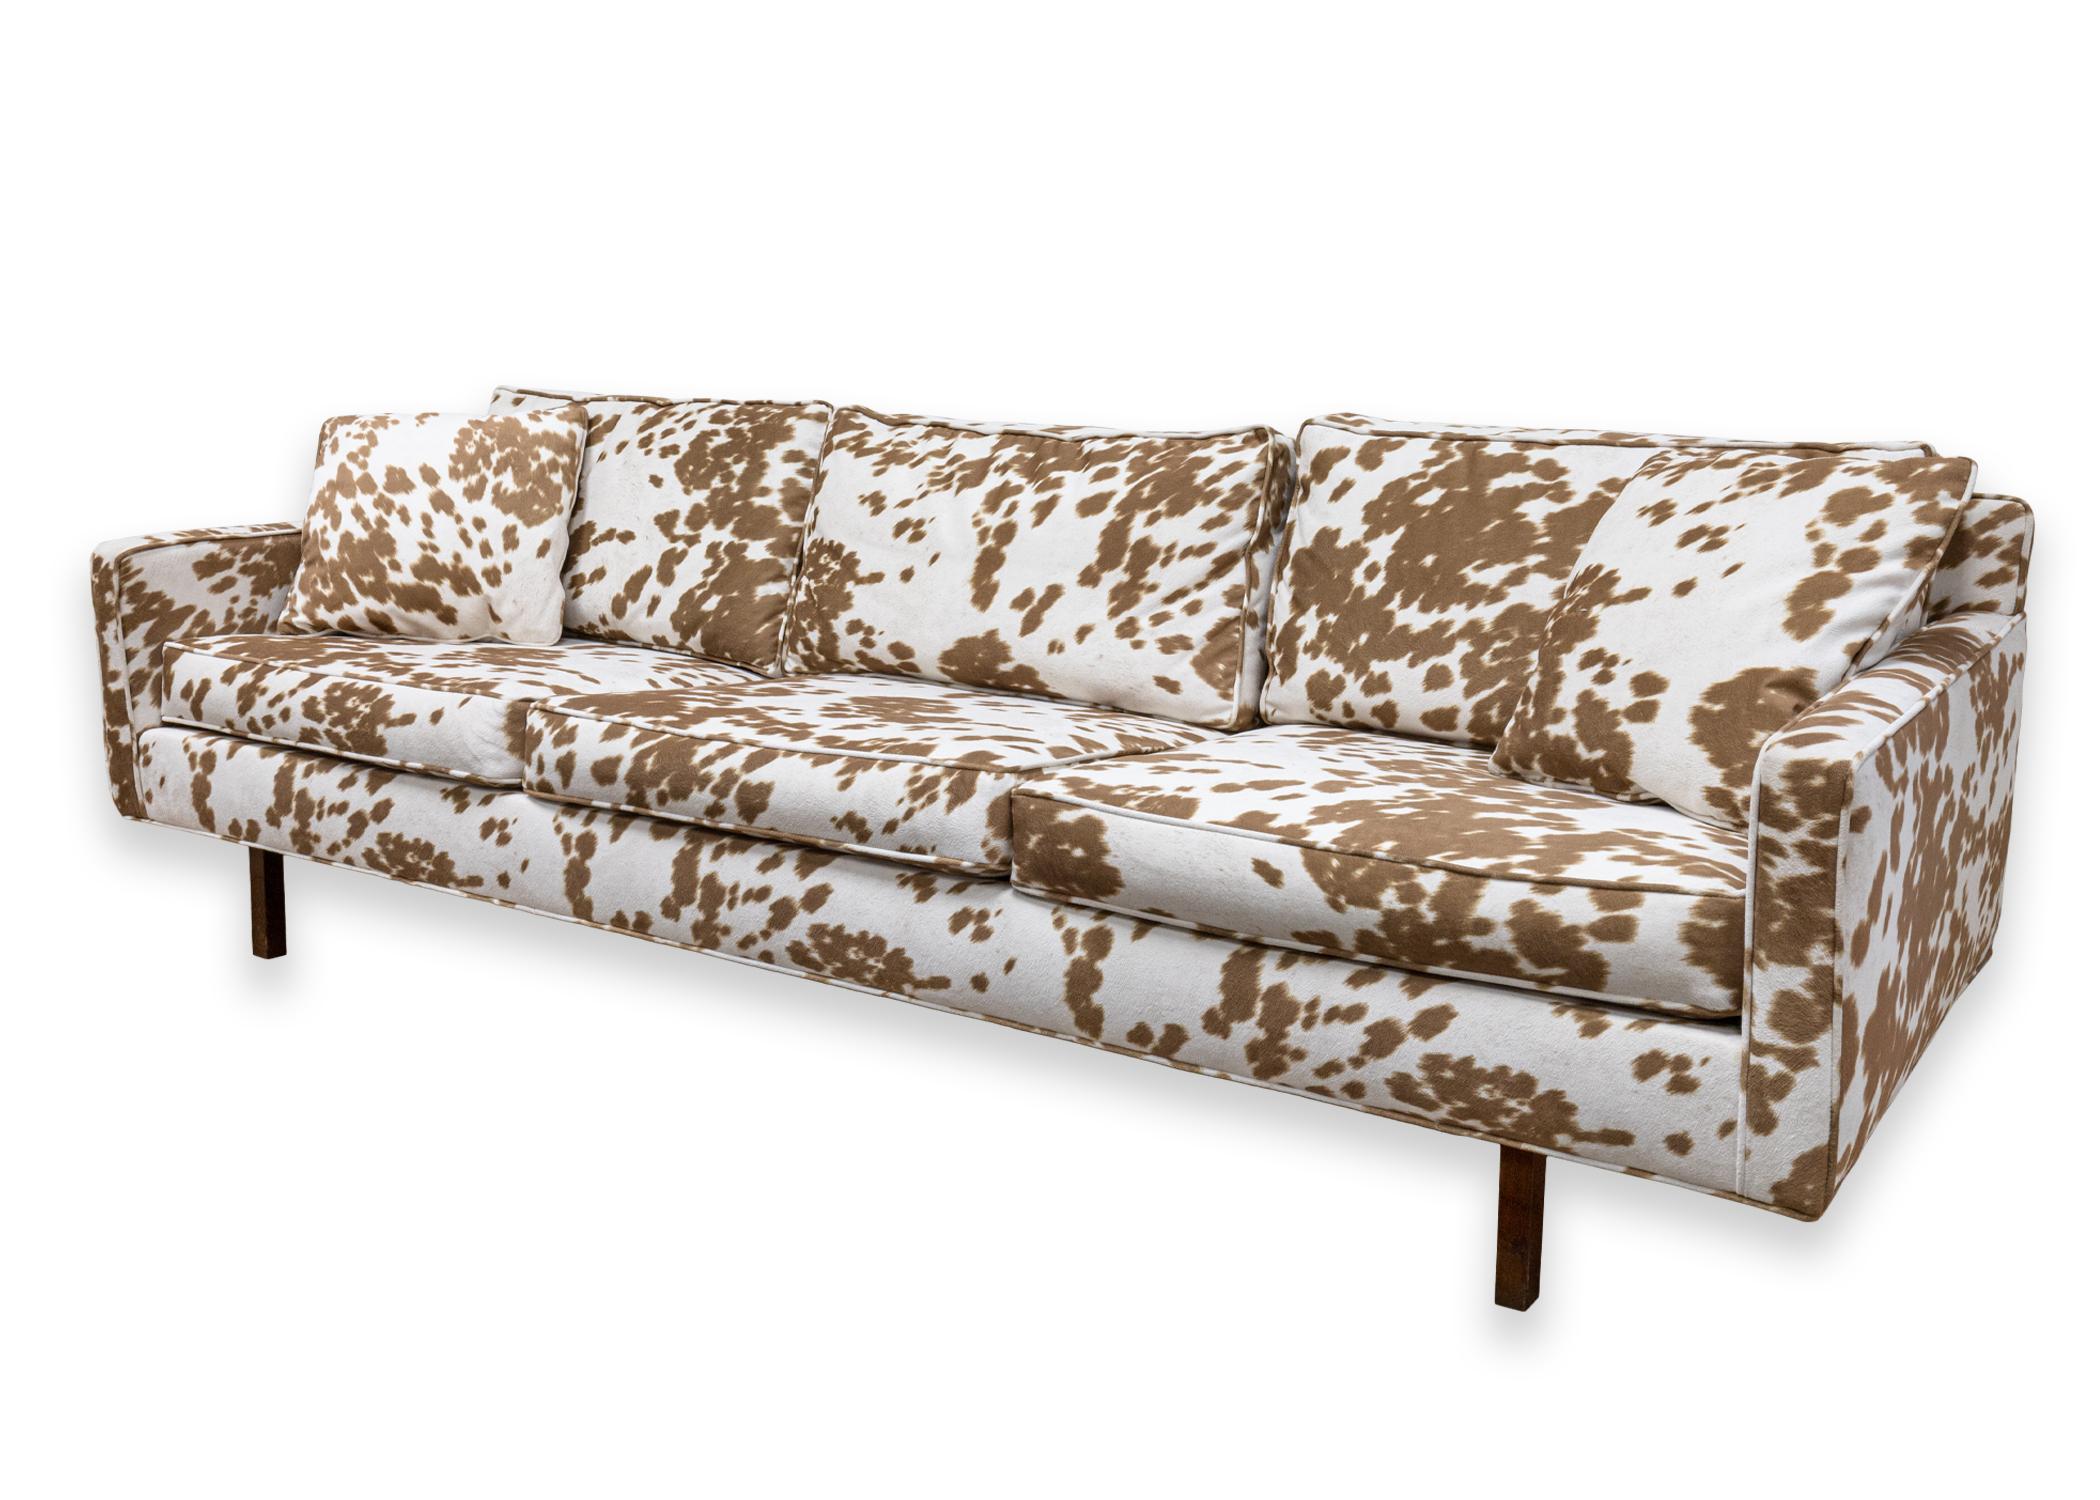 Un canapé Directional de style Milo Baughman. Un magnifique canapé doté d'une tapisserie d'ameublement marron et blanche à motif de vache, tout à fait unique. Ce canapé est doté de coussins amovibles, de deux coussins assortis et de pieds en bois